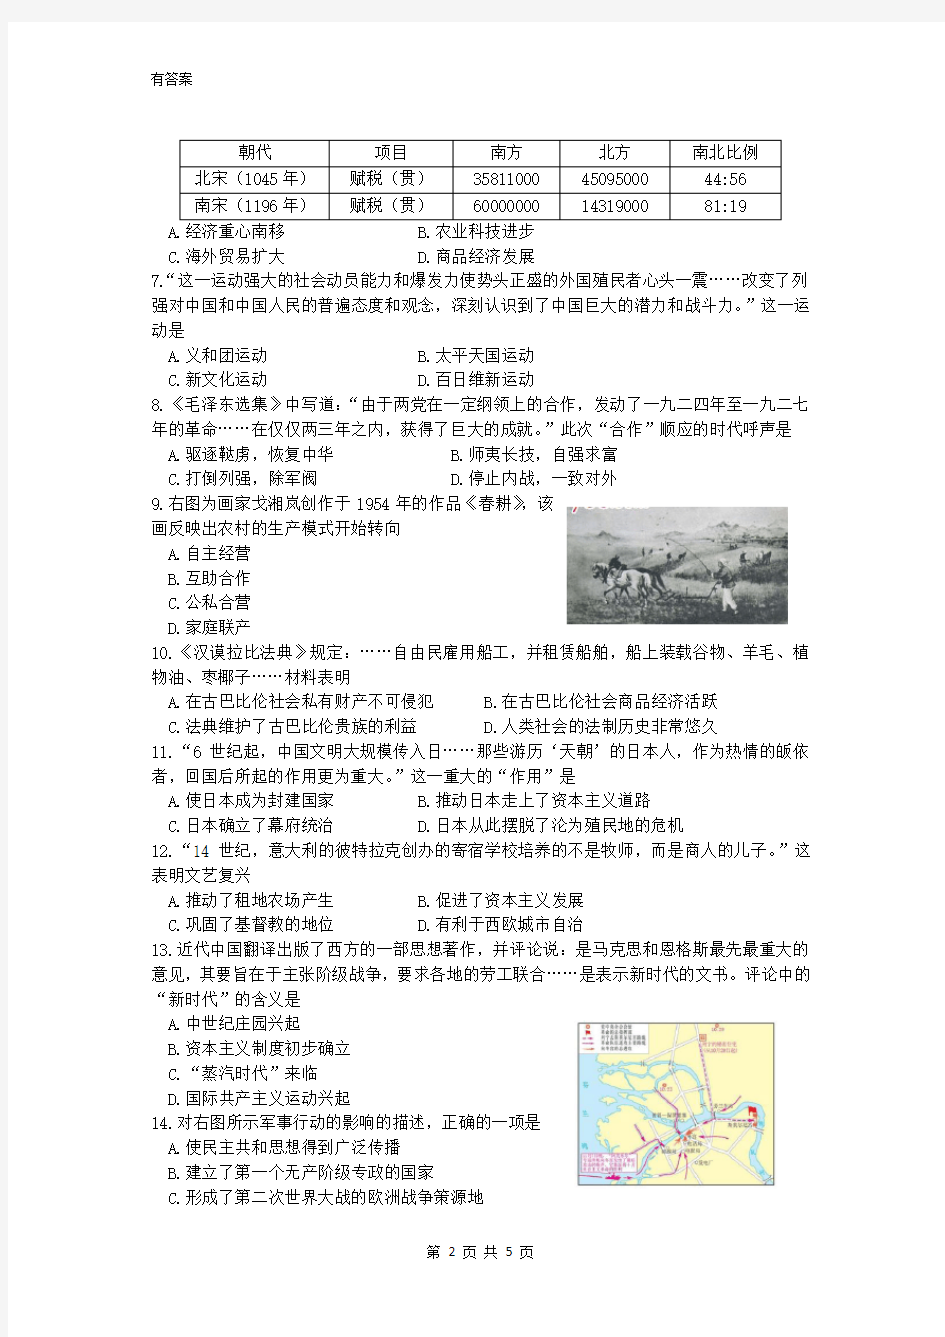 2020年安徽省中考历史模拟试卷及答案(二)